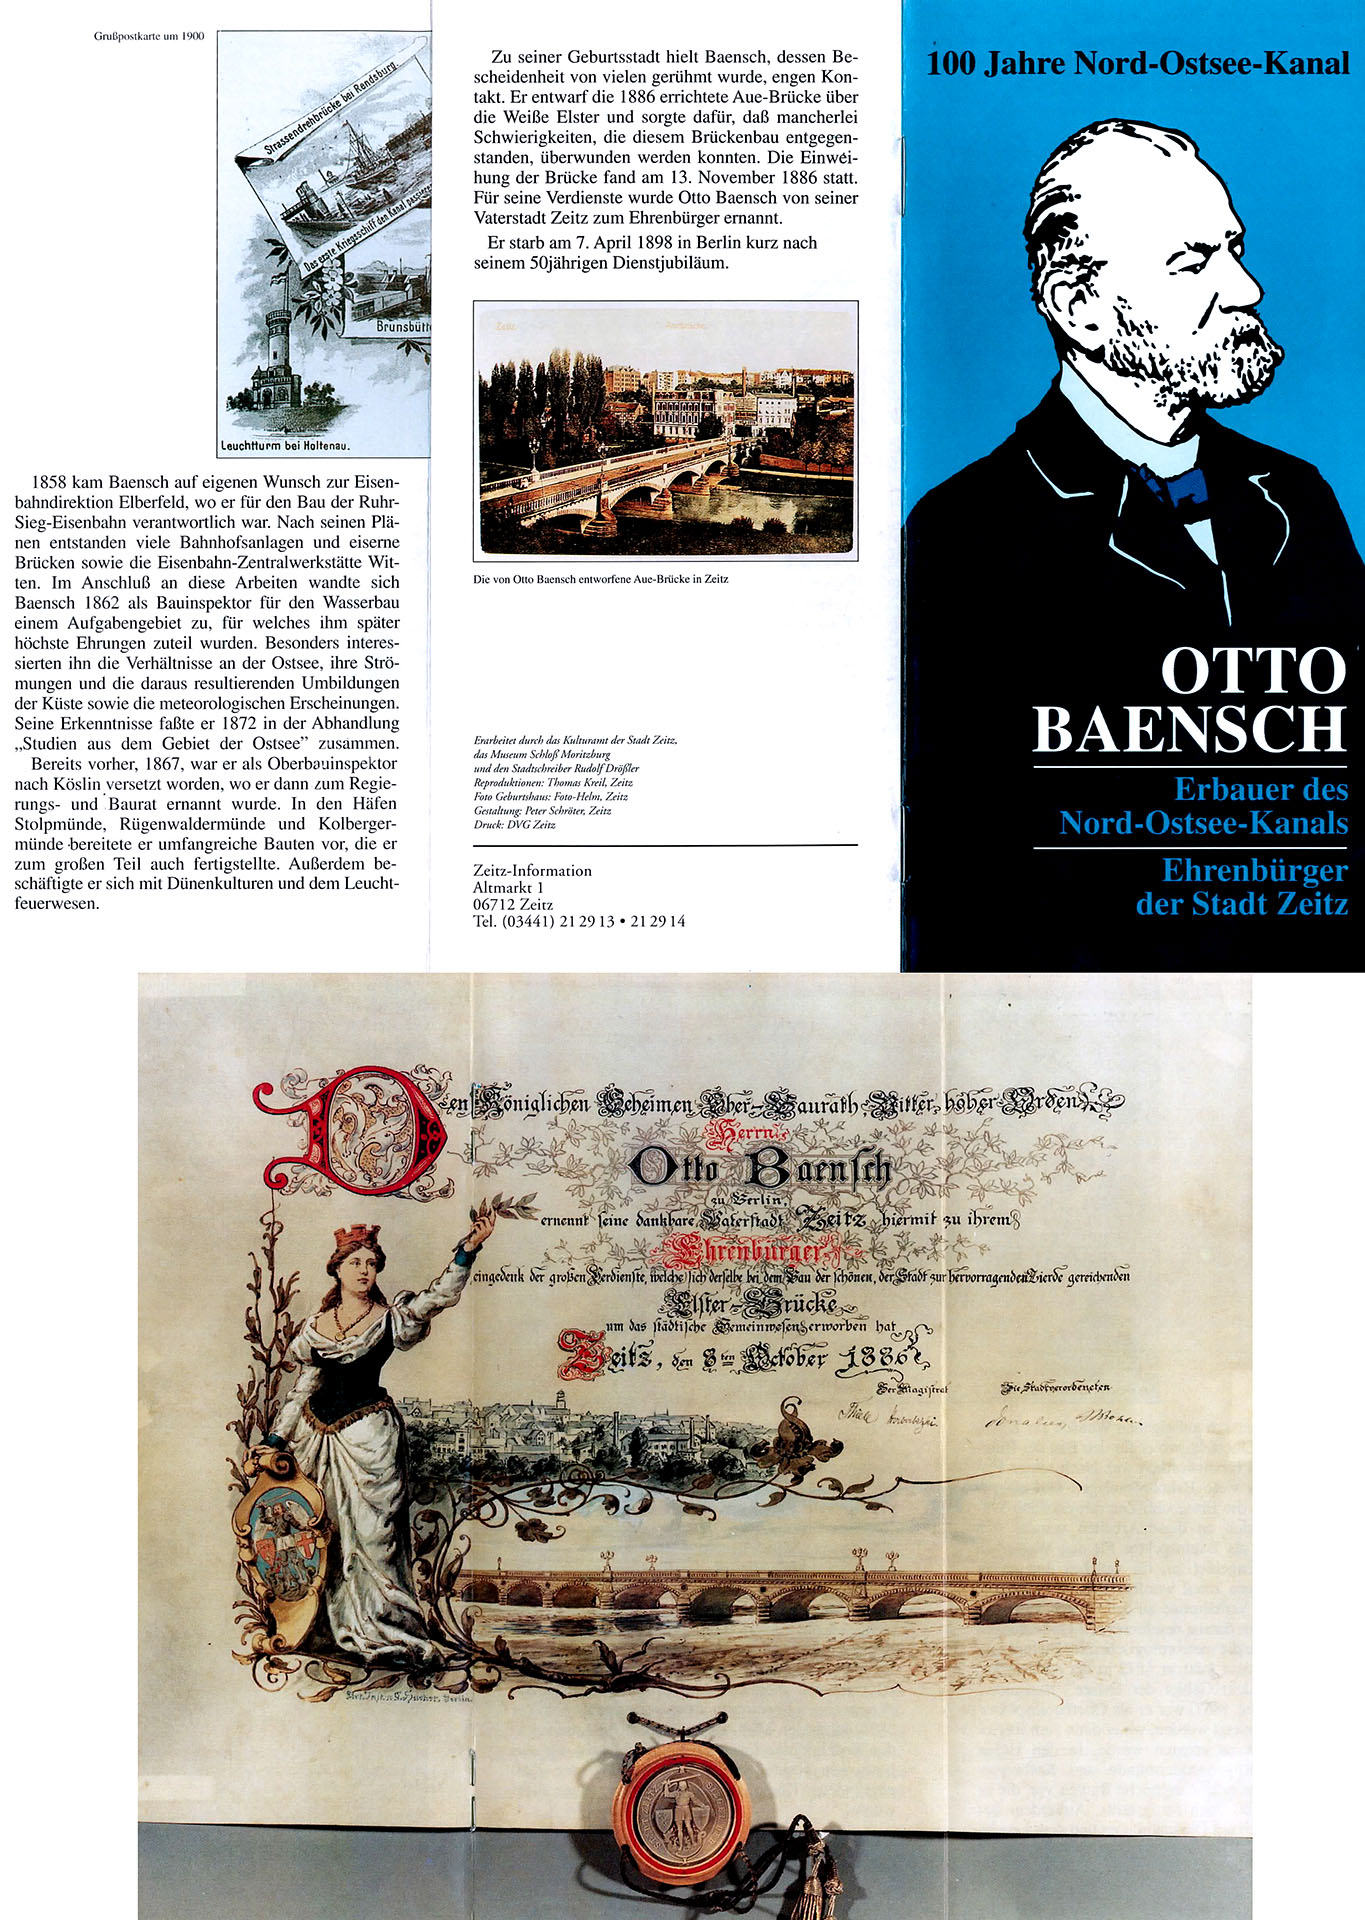 Otto Baensch - Erbauer des Nord - Ostsee - Kanals - Zeitz - Information